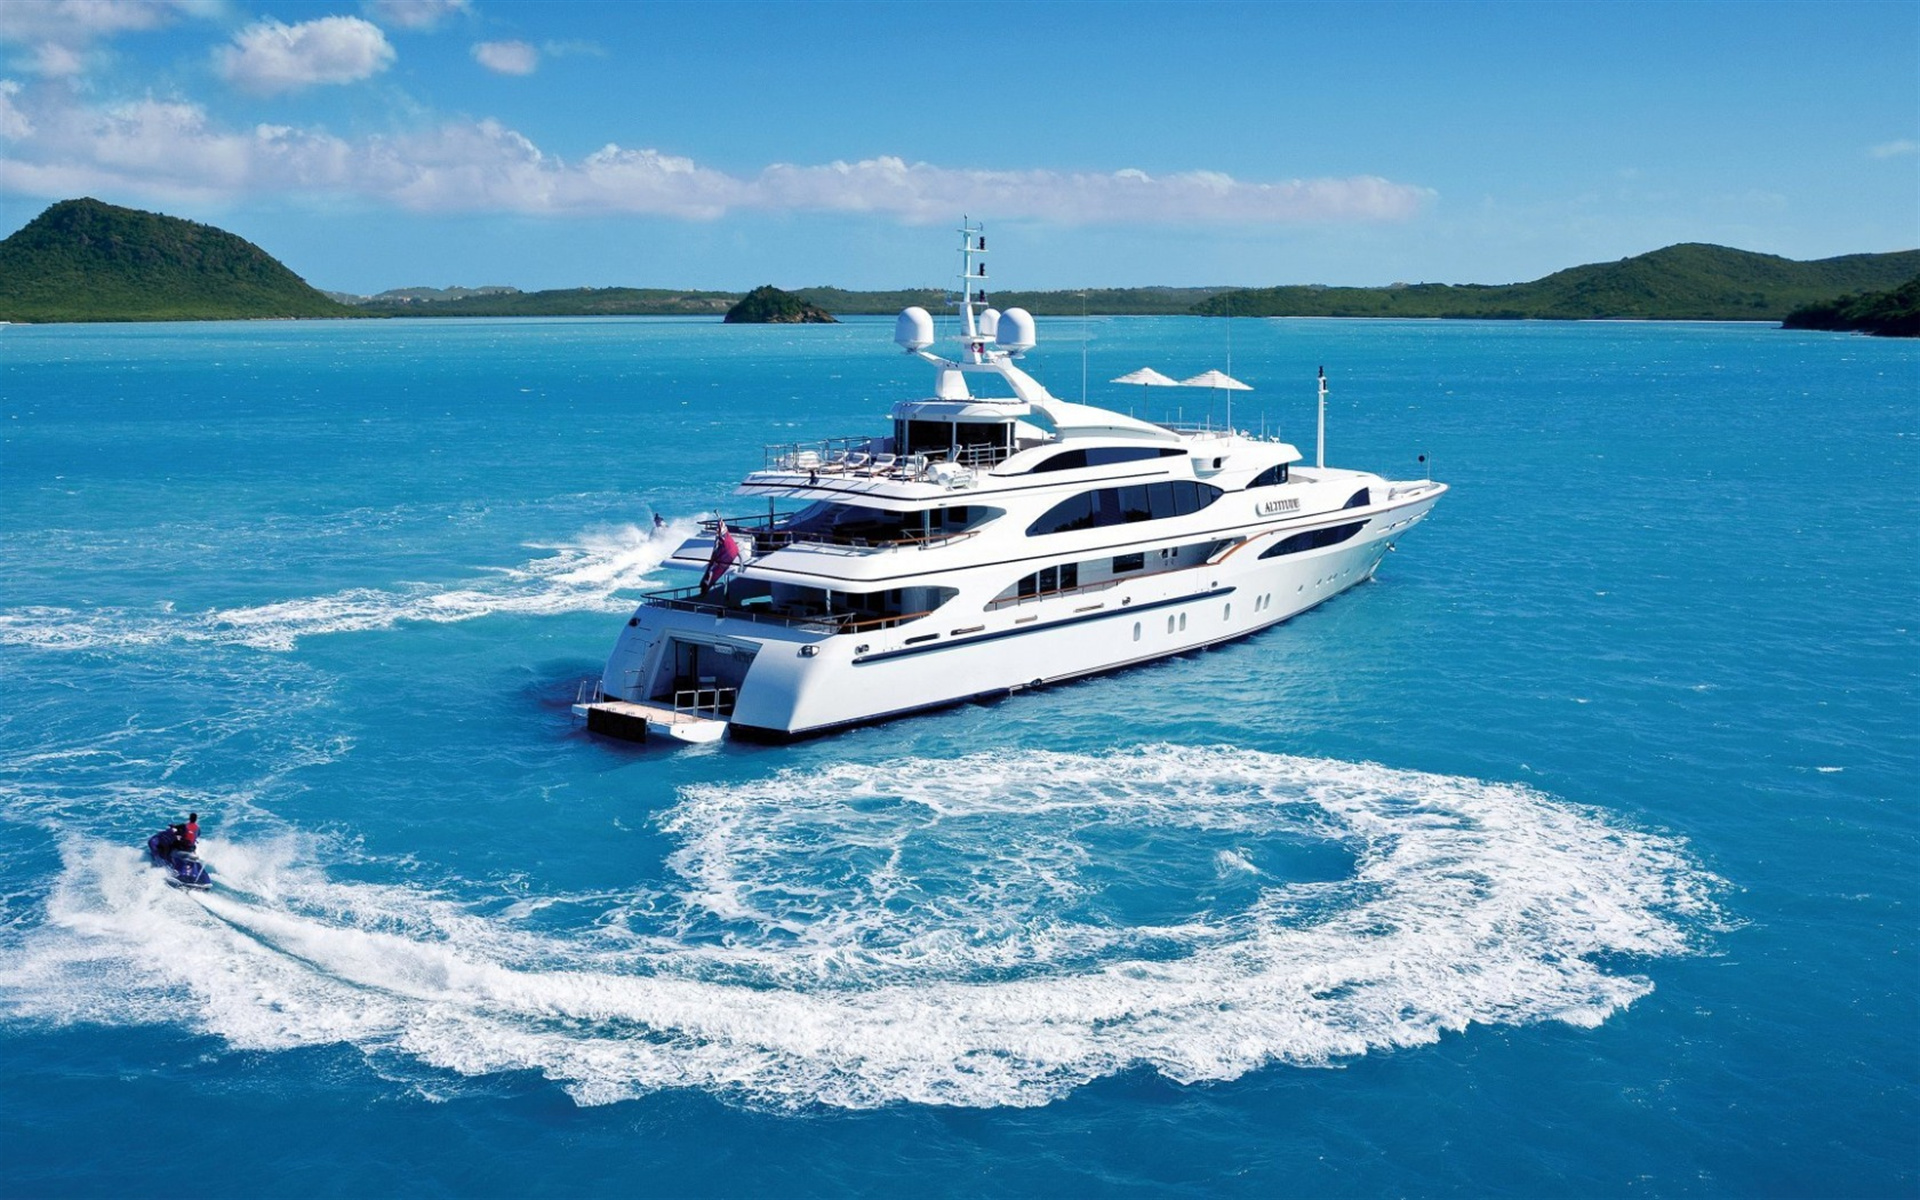 Yacht: Luxury white vessel, Caribbean Sea, Bay, Seascape. 1920x1200 HD Wallpaper.